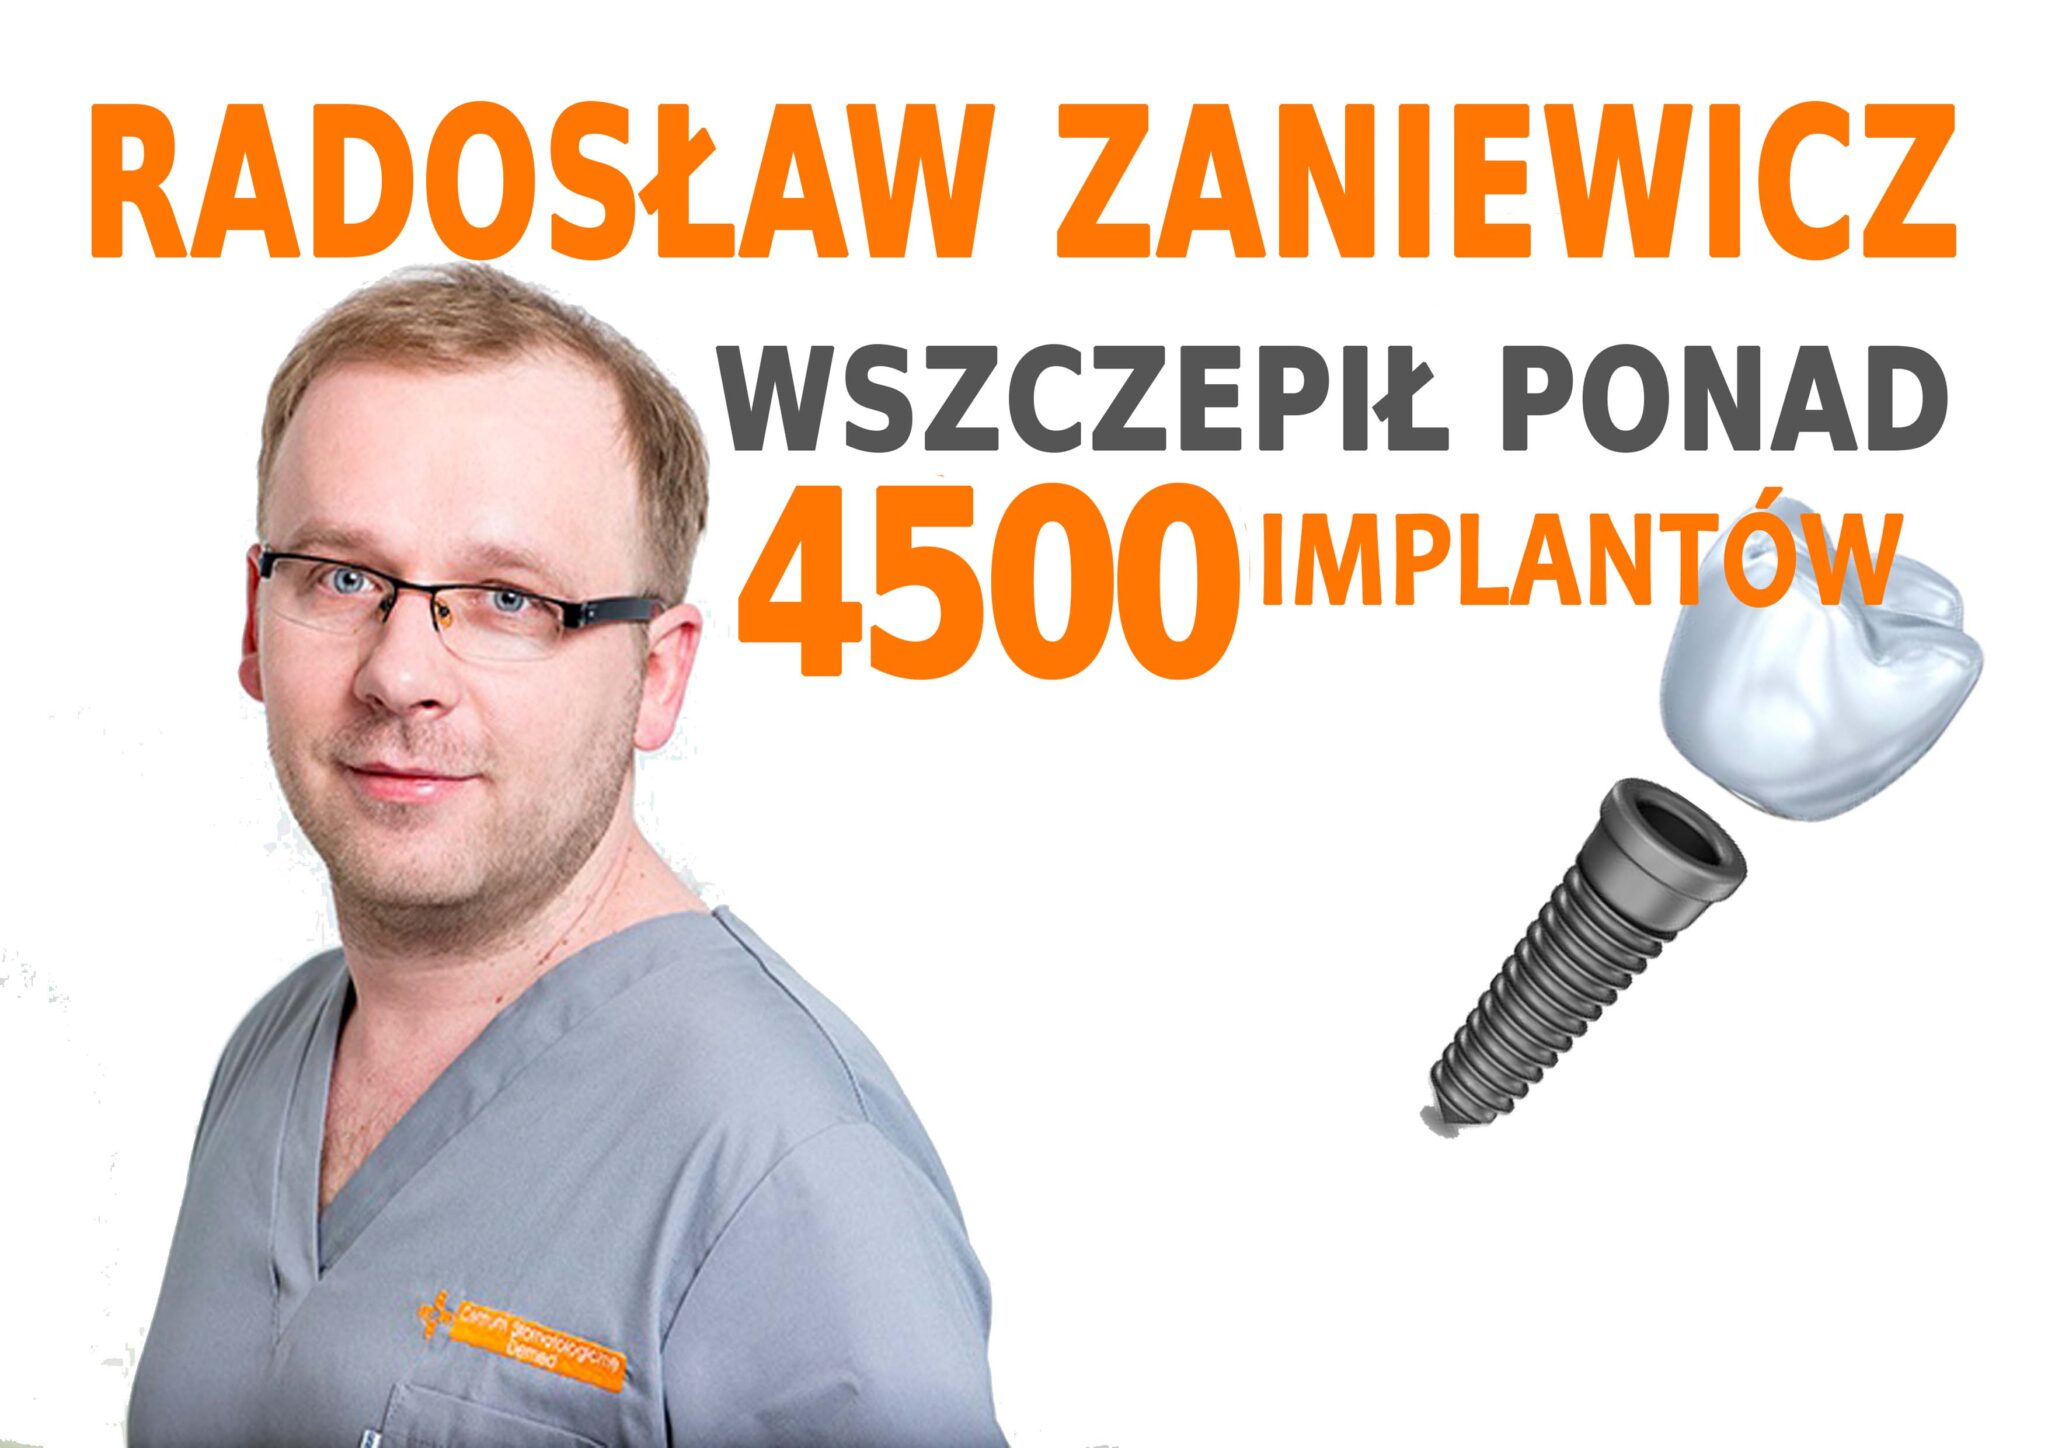 Chirurg Radosław Zaniewicz